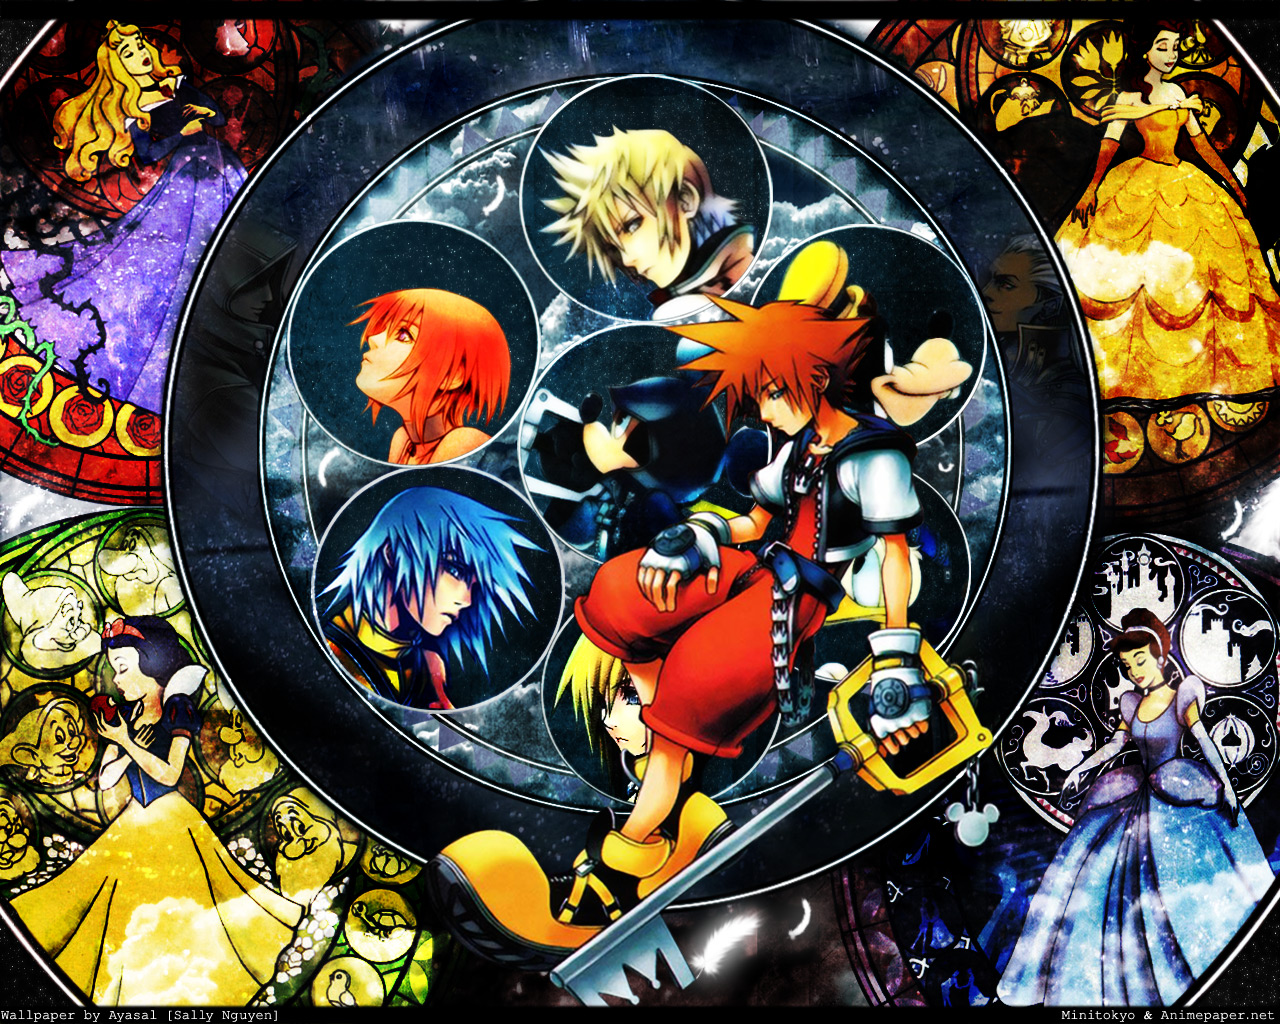 Kingdom Hearts Picture